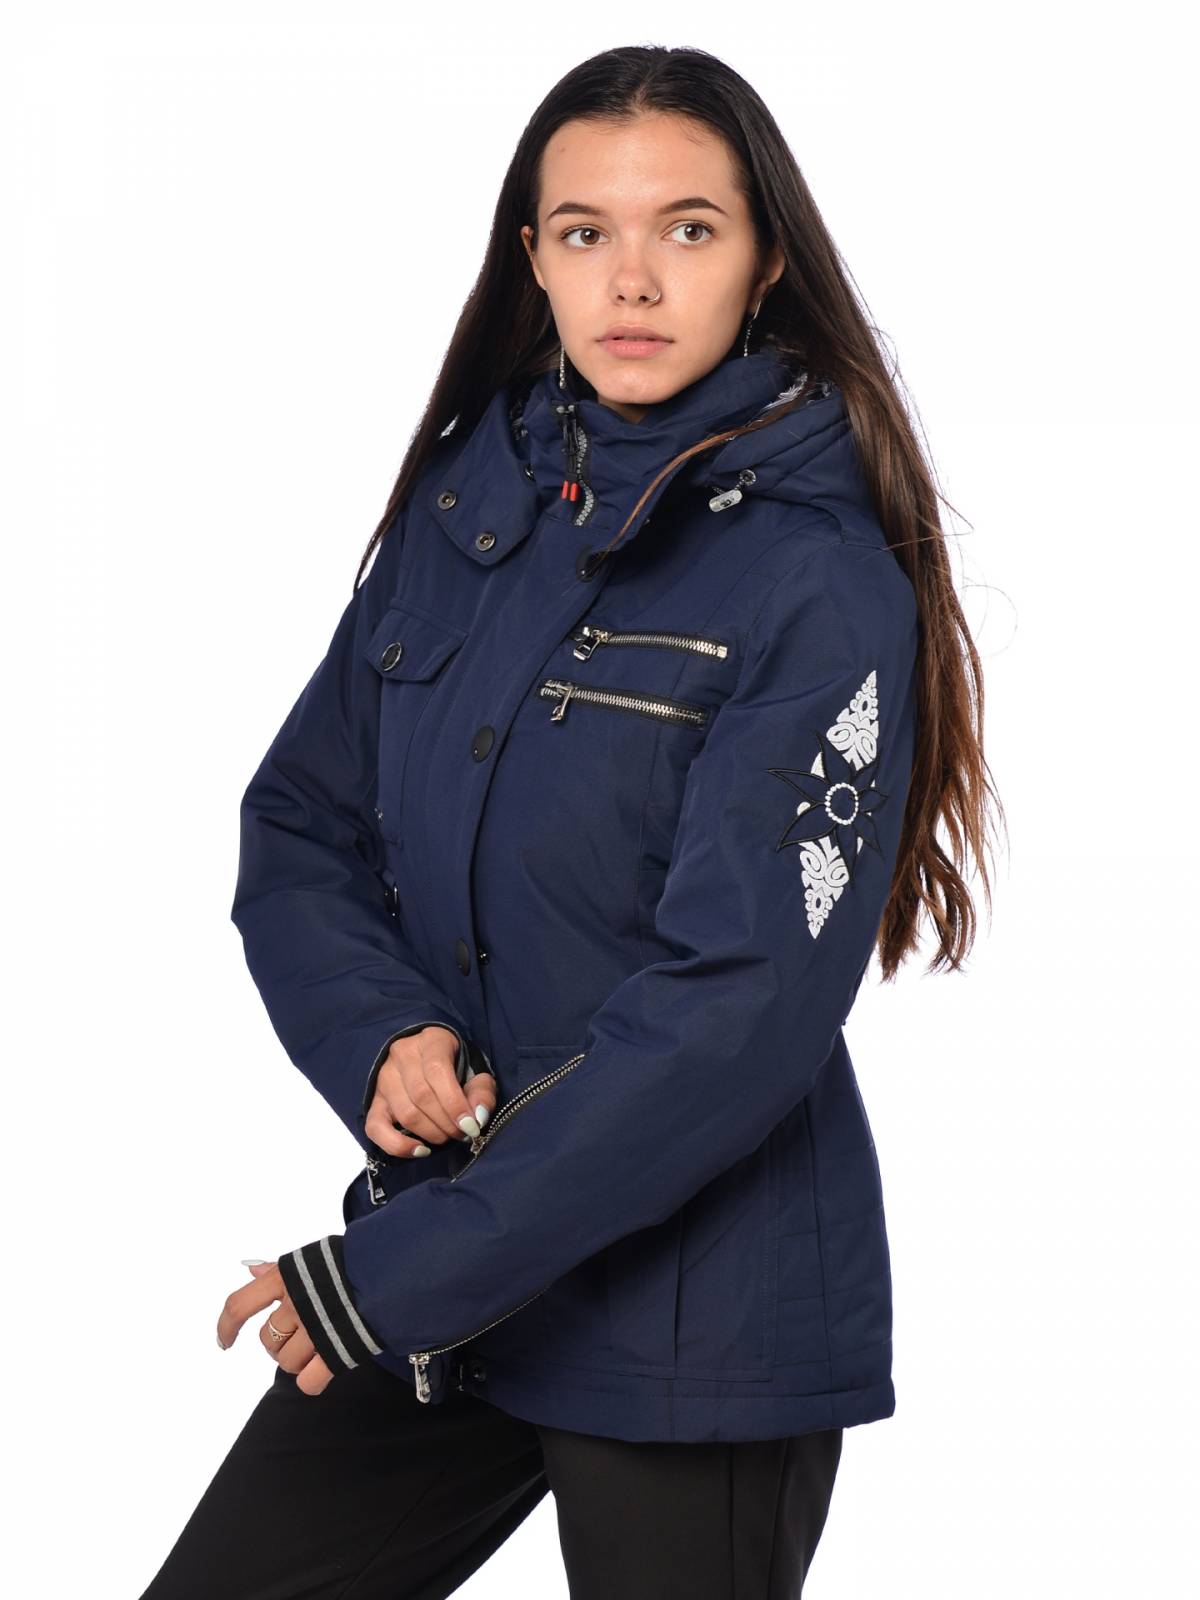 Горнолыжная куртка женская FUN ROCKET 16211К размер 46, темно-синий